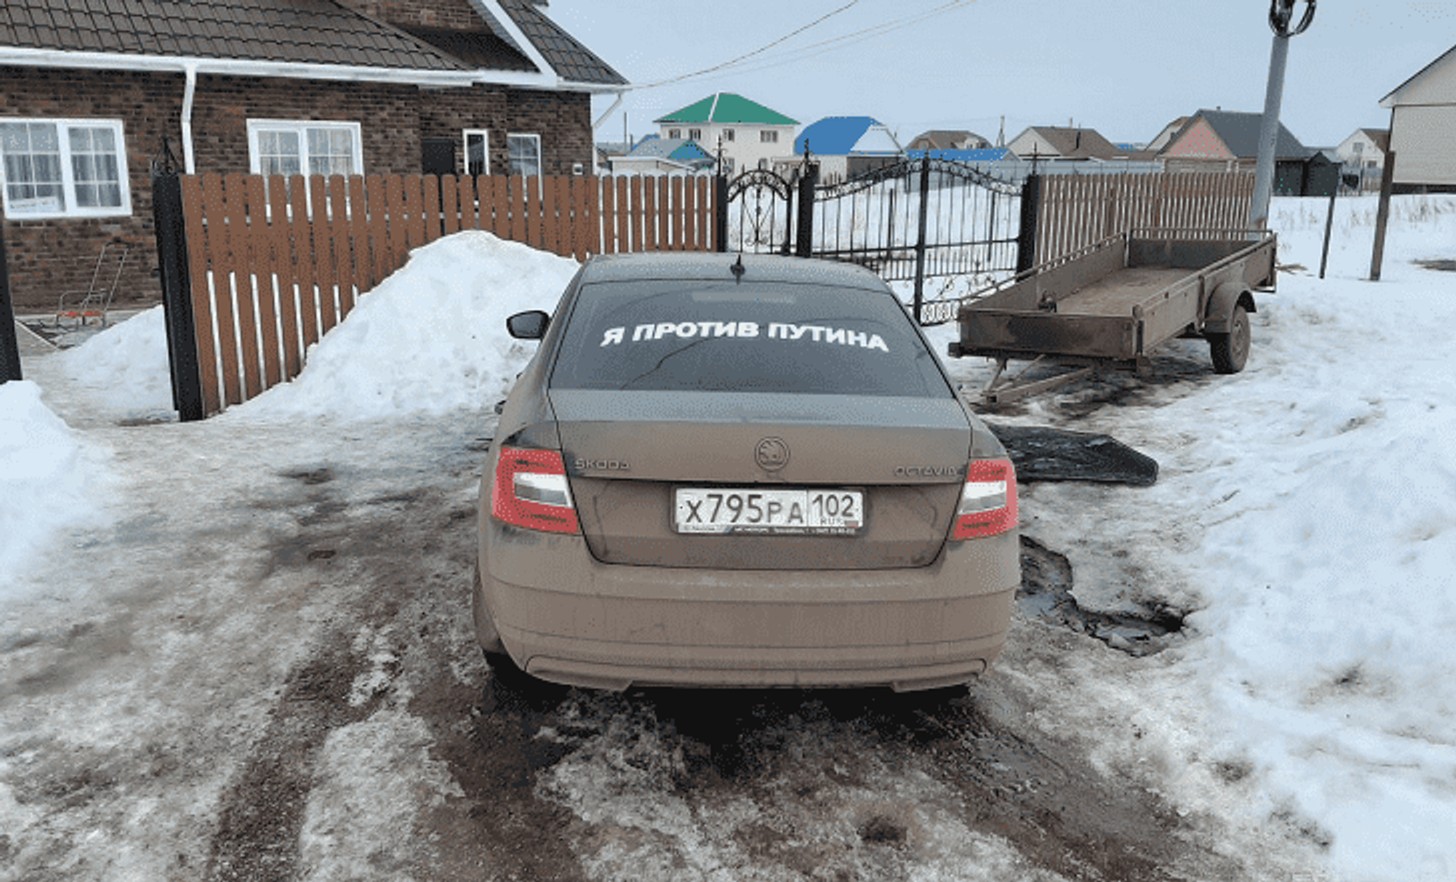 У Башкирії суд призначив умовний термін місцевому жителю по справі про підпал машини опозиціонера з наклейкою «Я проти Путіна»